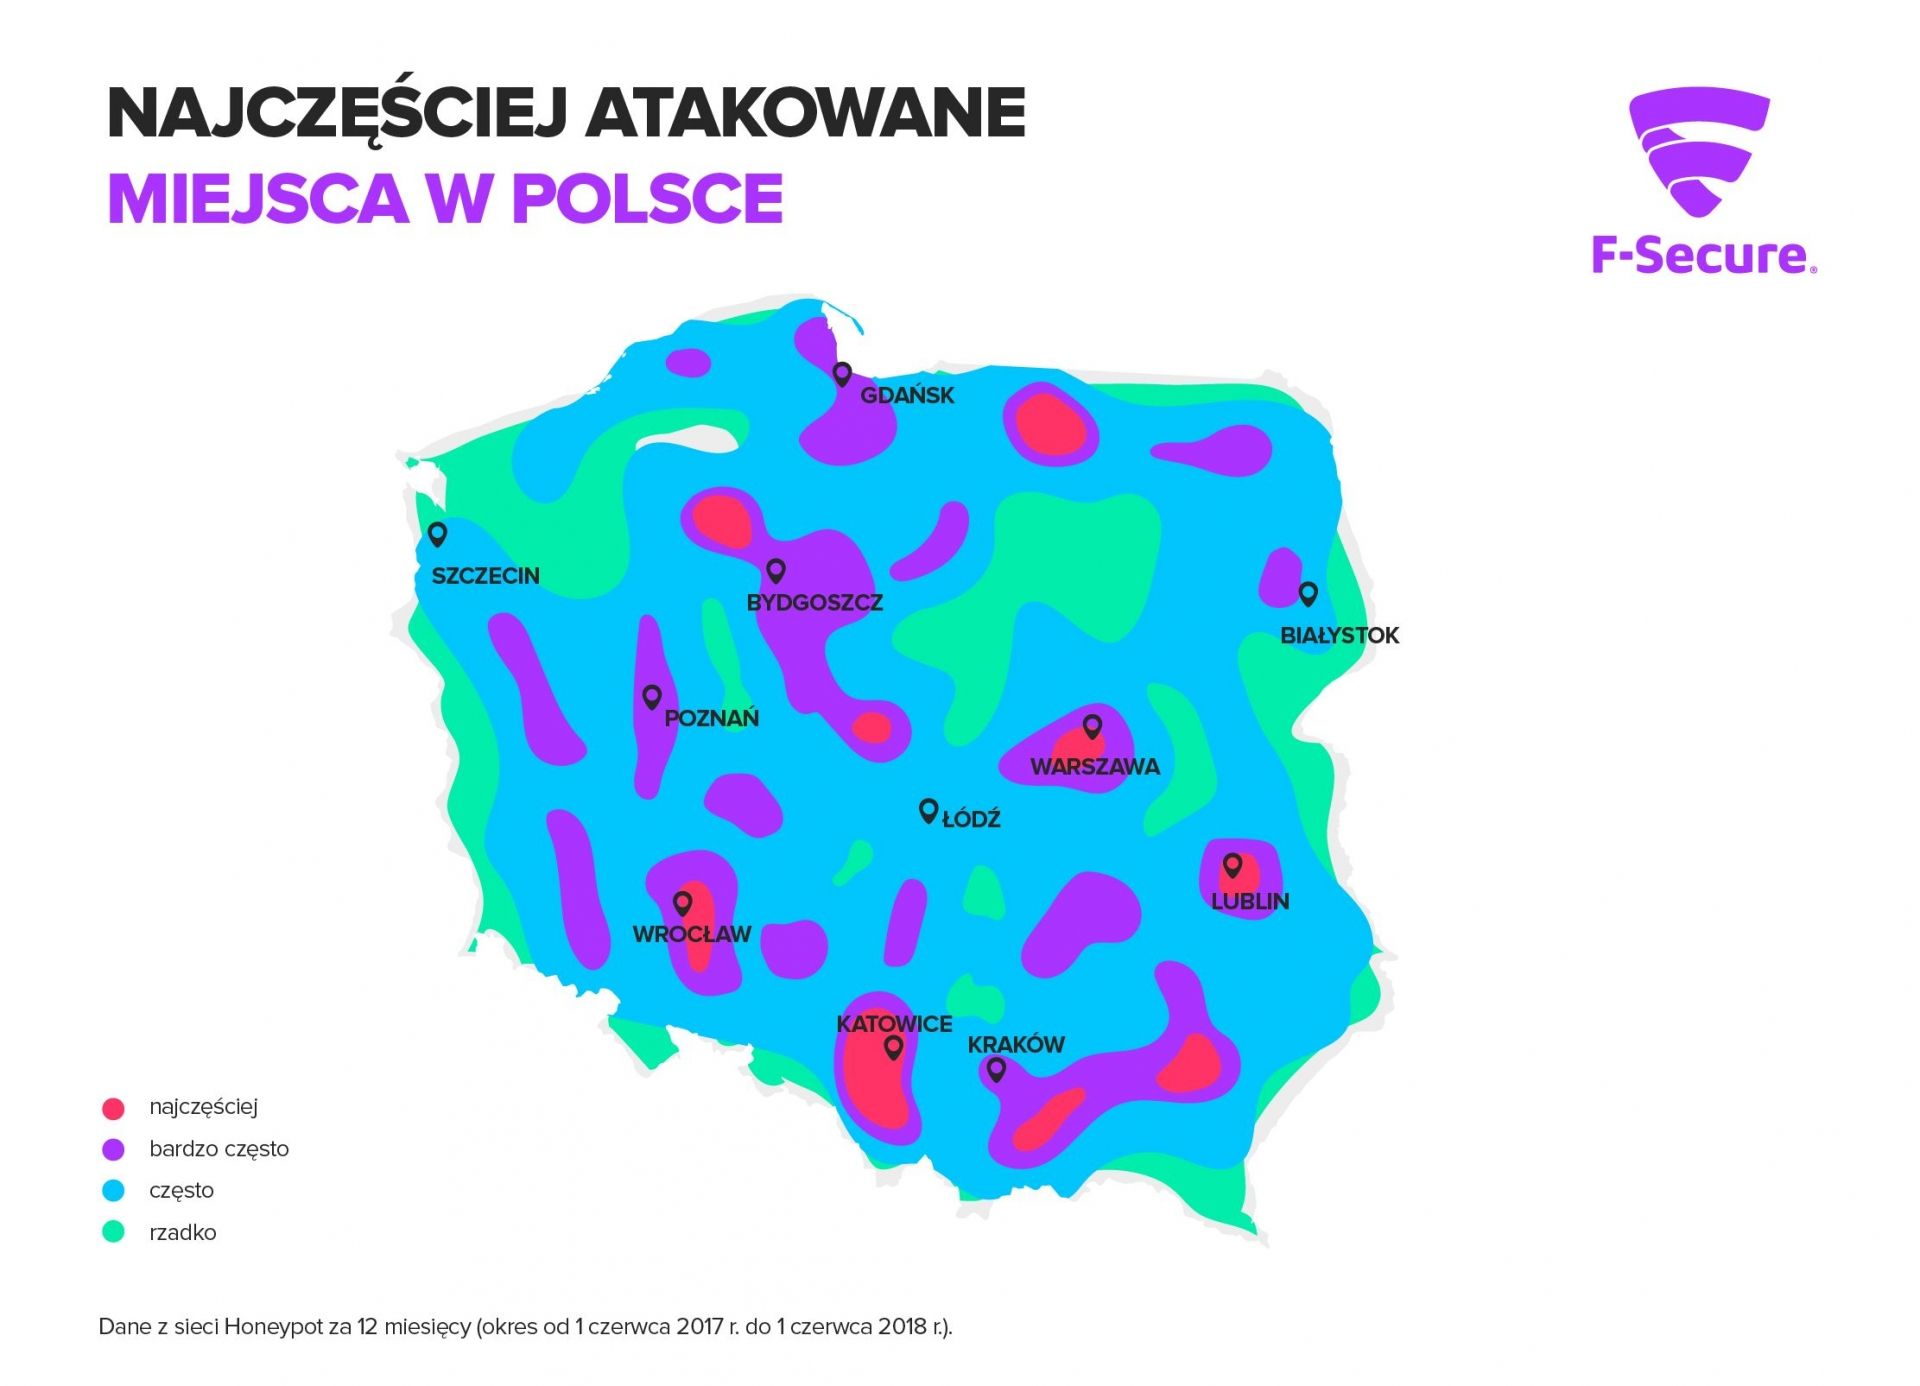 Najczęściej atakowane miasta w Polsce według F-Secure